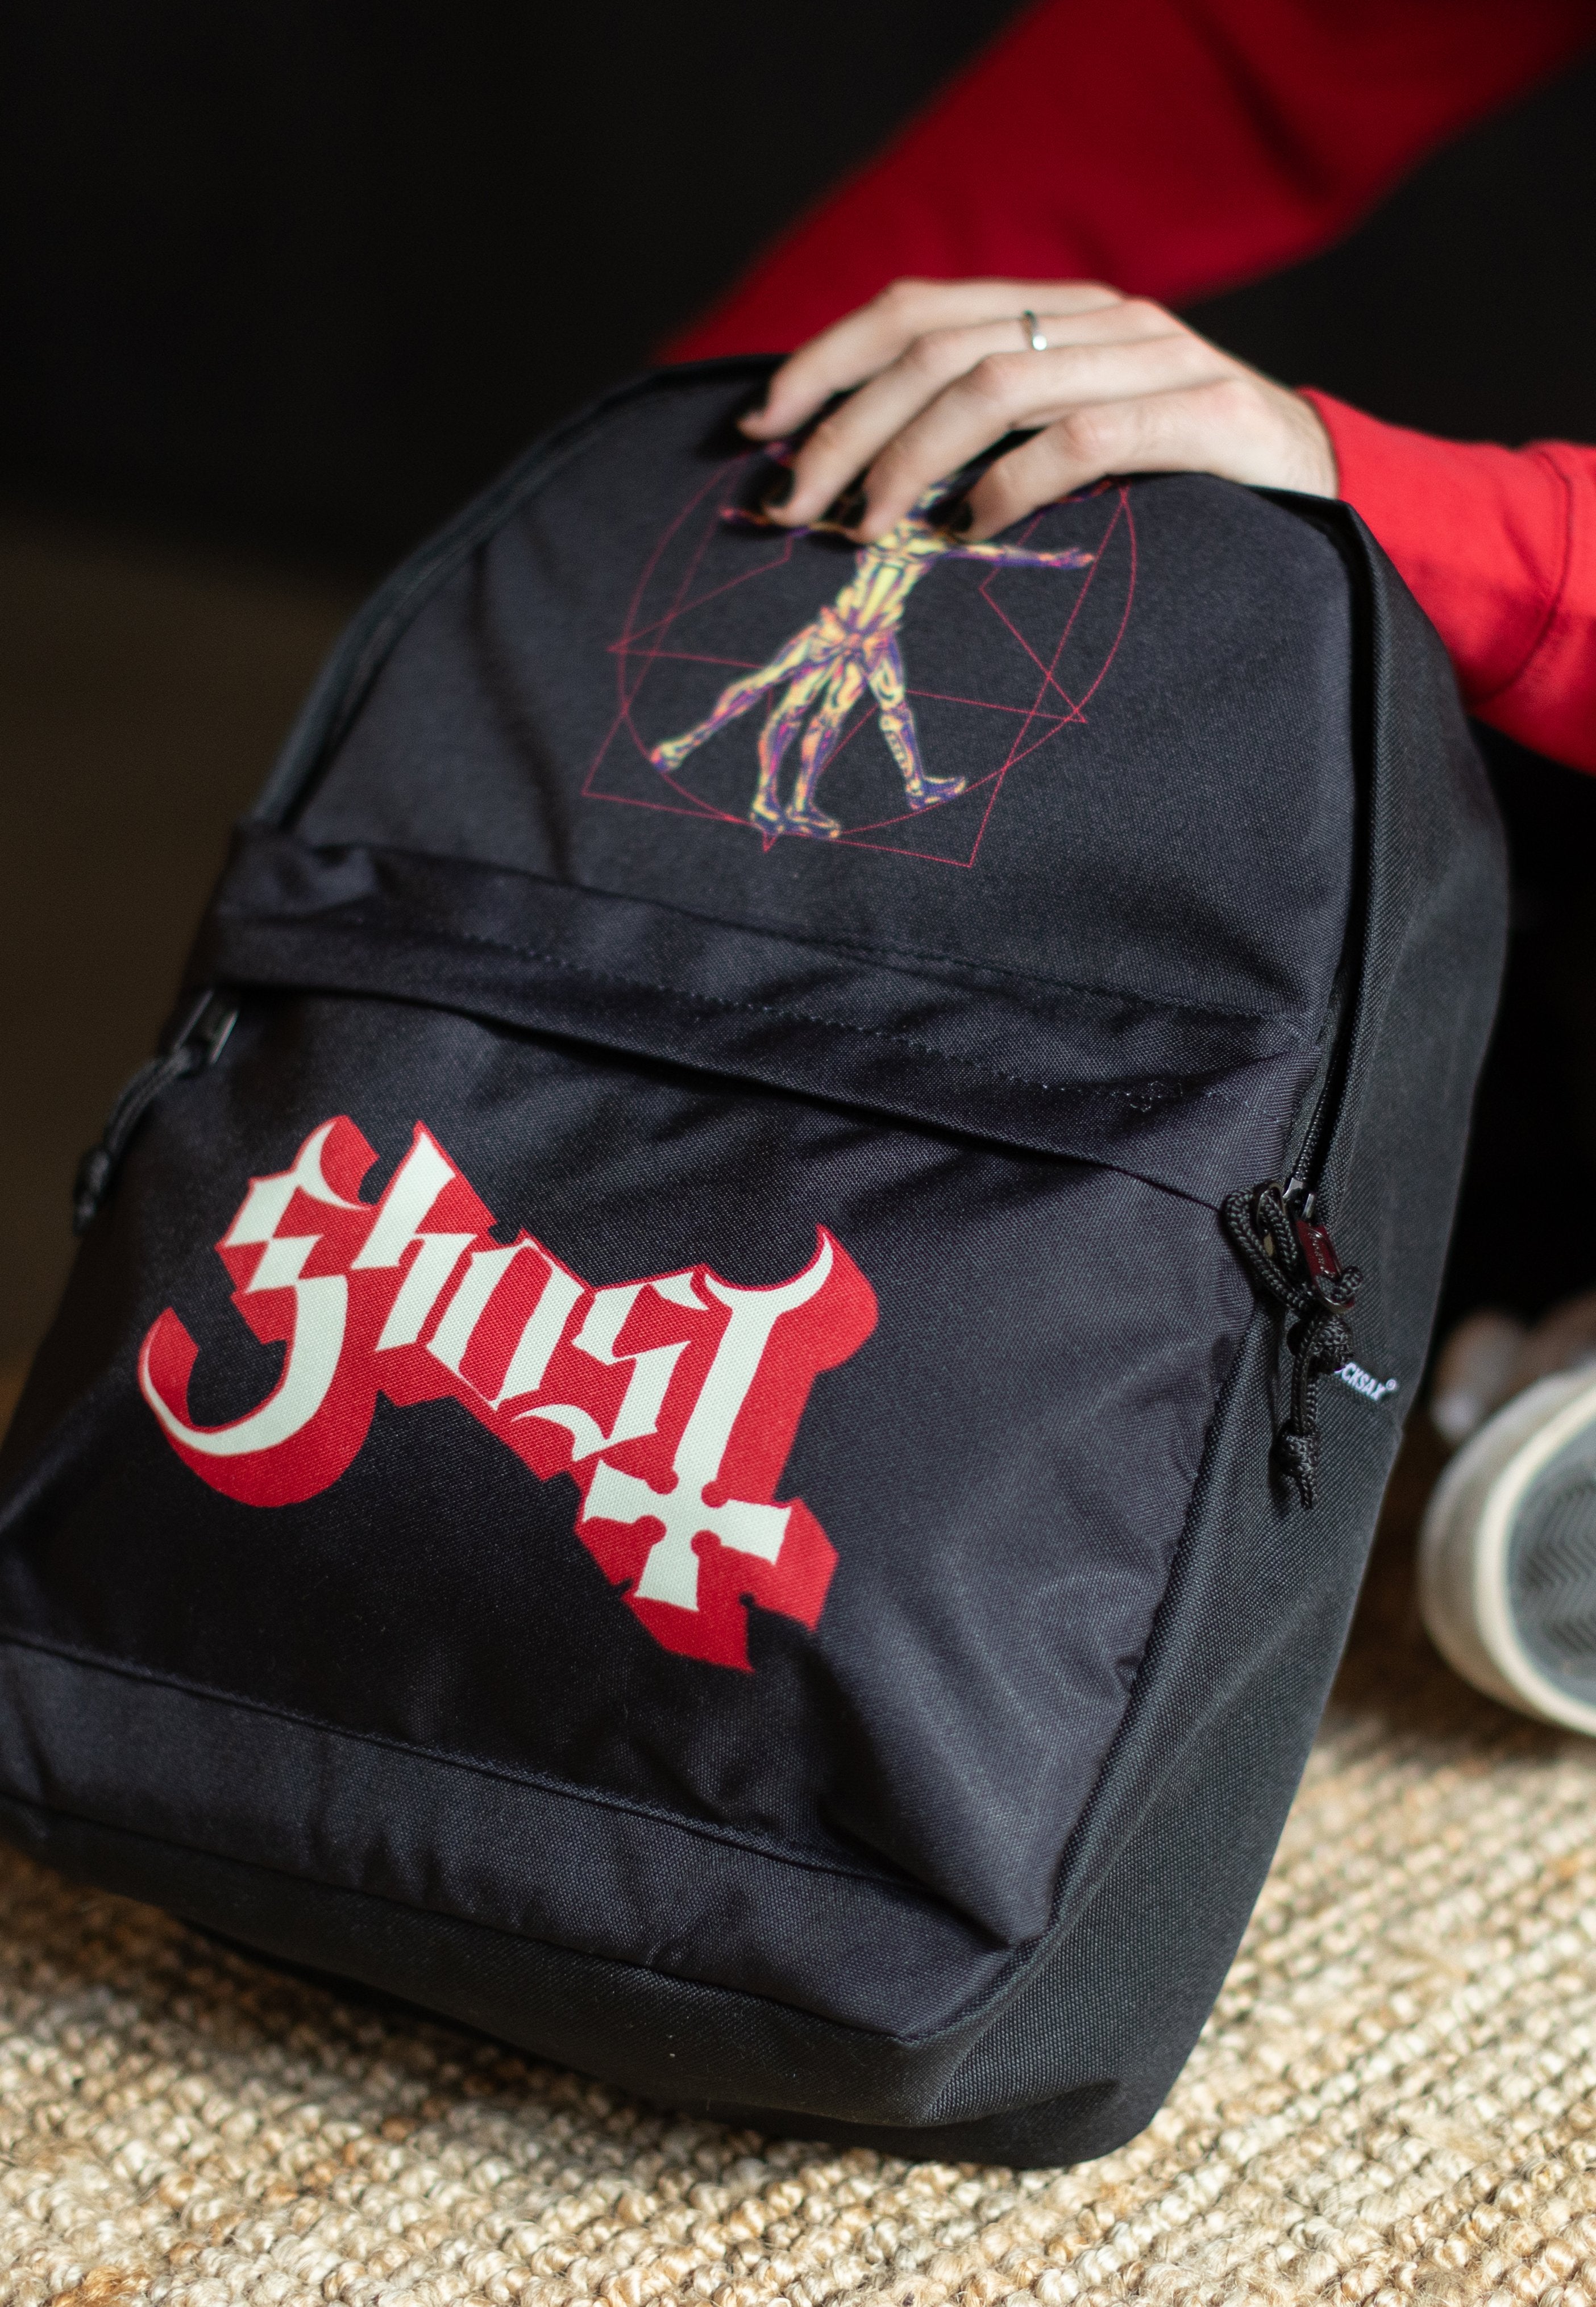 Ghost - Popestar - Backpack